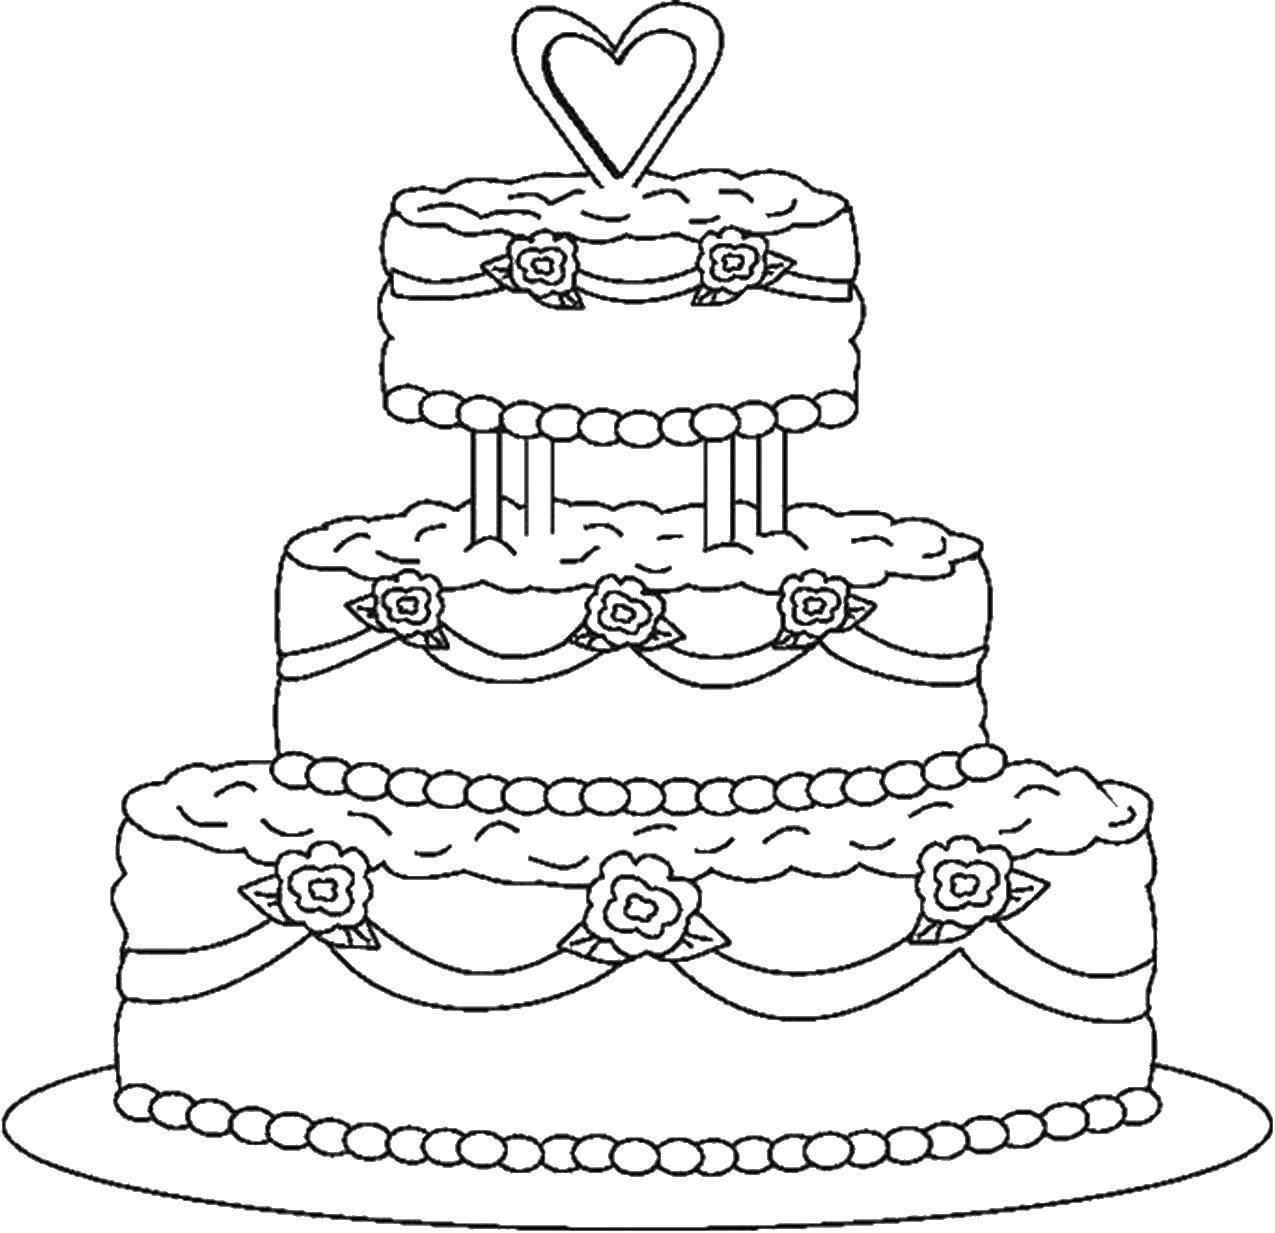 Опис: розмальовки  Весілля і тортик. Категорія: торти. Теги:  Торт, їжа, свято.